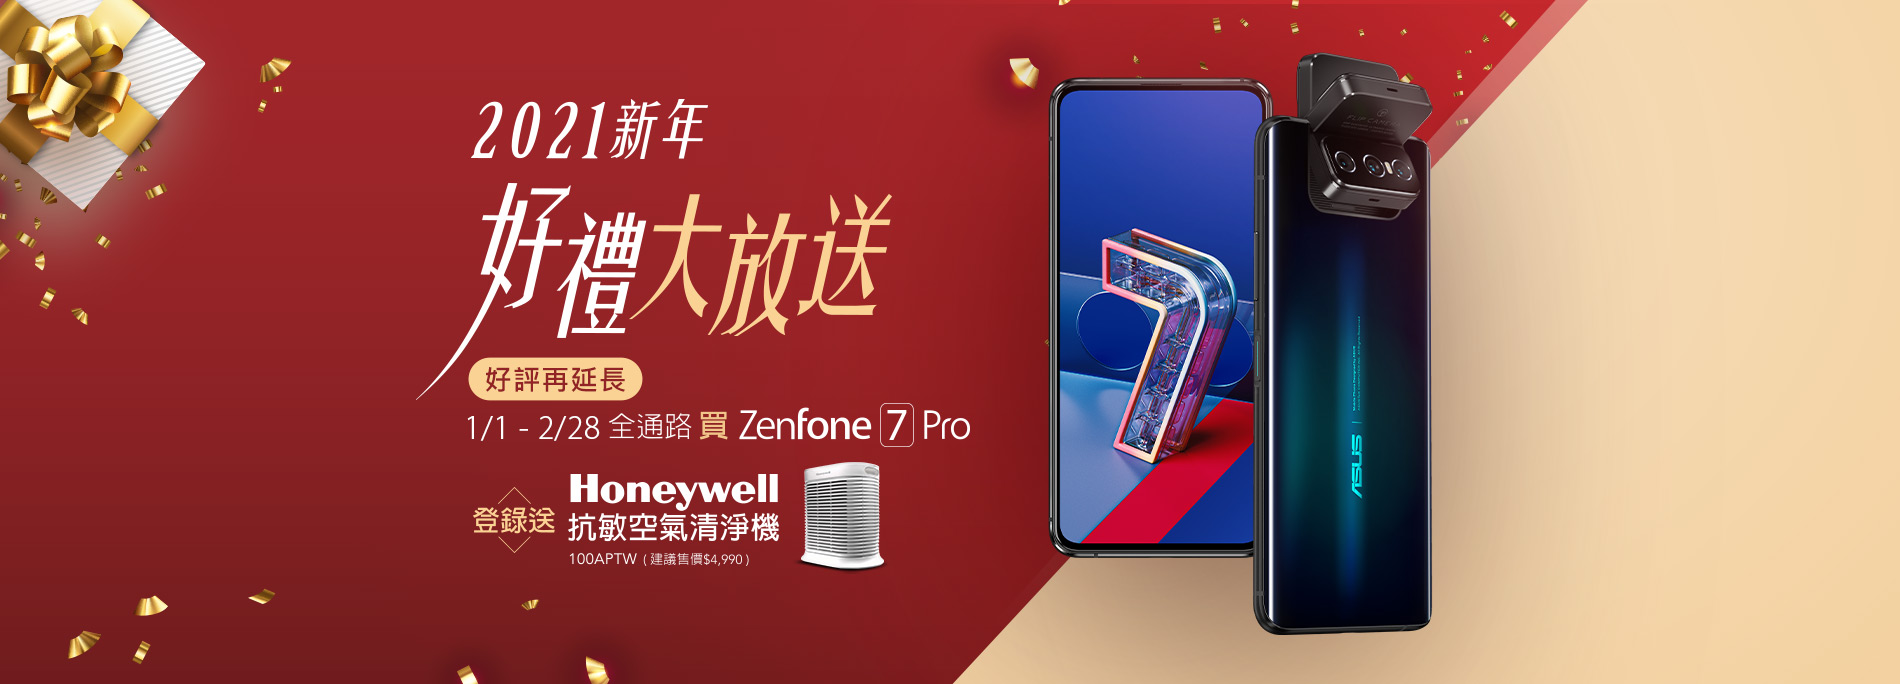 【新年好禮送】買 ZenFone 7 Pro 全通路登錄送 Honeywell 抗敏空氣清淨機